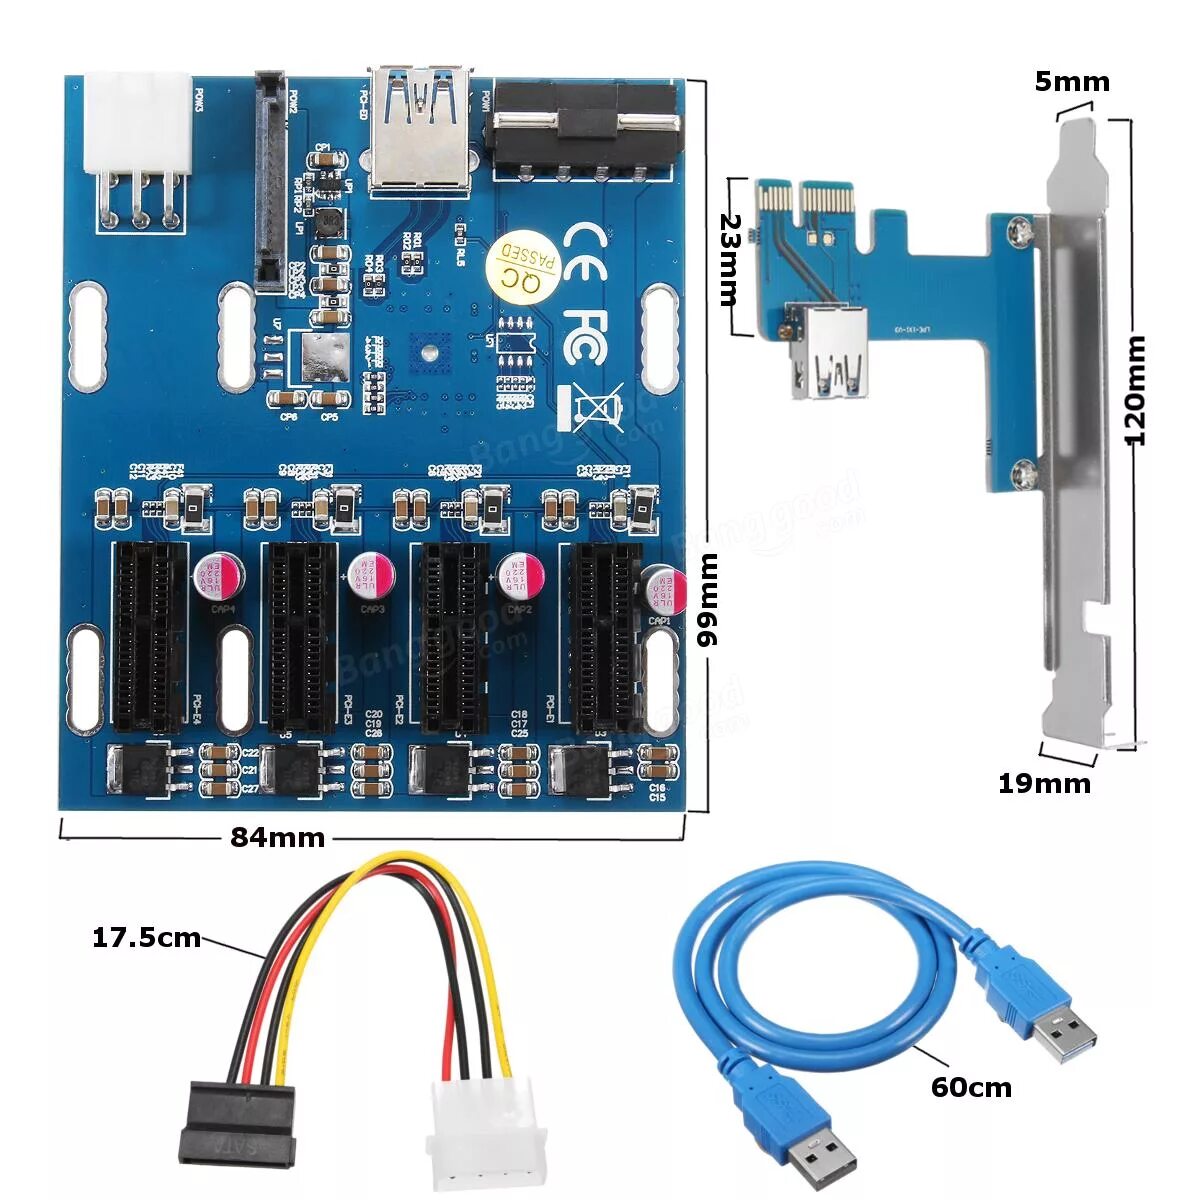 MYPADS PCI-E x1 Hub USB 3.0. Райзер PCI-E x1 схема. 4 Портовый коммутатор PCI-E. Райзер для звуковой карты PCI-E x1. Слот pci e x1